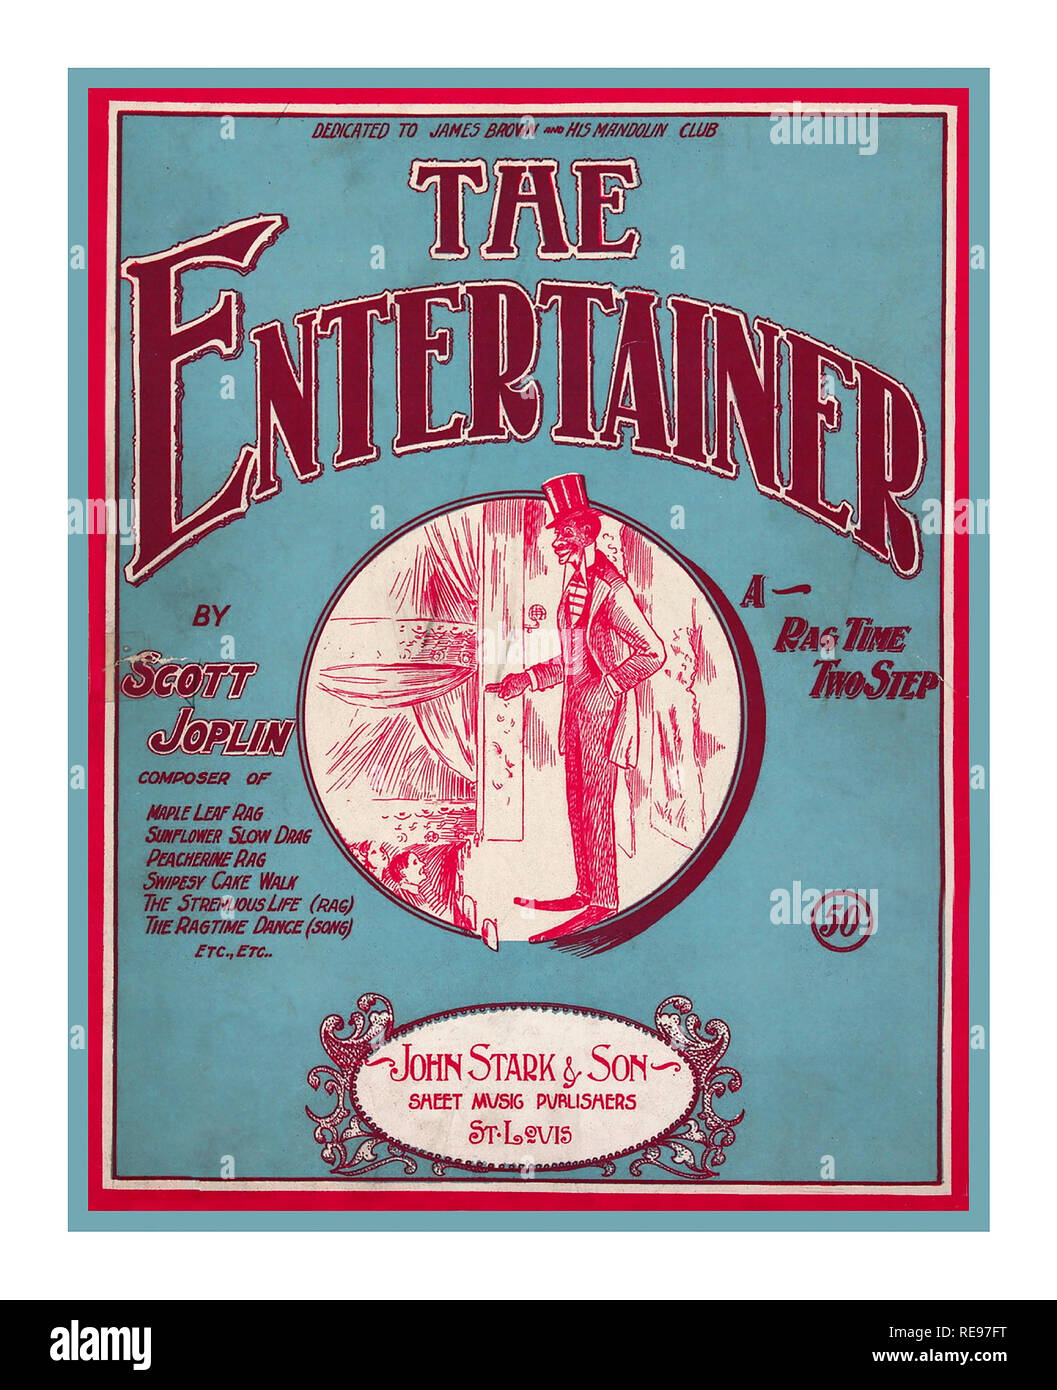 SCOTT JOPLIN Vintage Partituras Portada de 'The Entertainer' Un paño de piano clásico de 1902 escrito por Scott Joplin Se vendió primero como partituras, y en el 1910s como rollos de piano que tocarían en pianos. La primera grabación fue de músicos de blues y ragtime, los Blue Boys en 1928, tocaron mandolina y guitarra como uno de los clásicos de ragtime, volvió a la prominencia internacional como parte del renacimiento de ragtime en el 1970s, Cuando se utilizó como tema musical para la película ganadora de Oscar de 1973, The Sting. Foto de stock